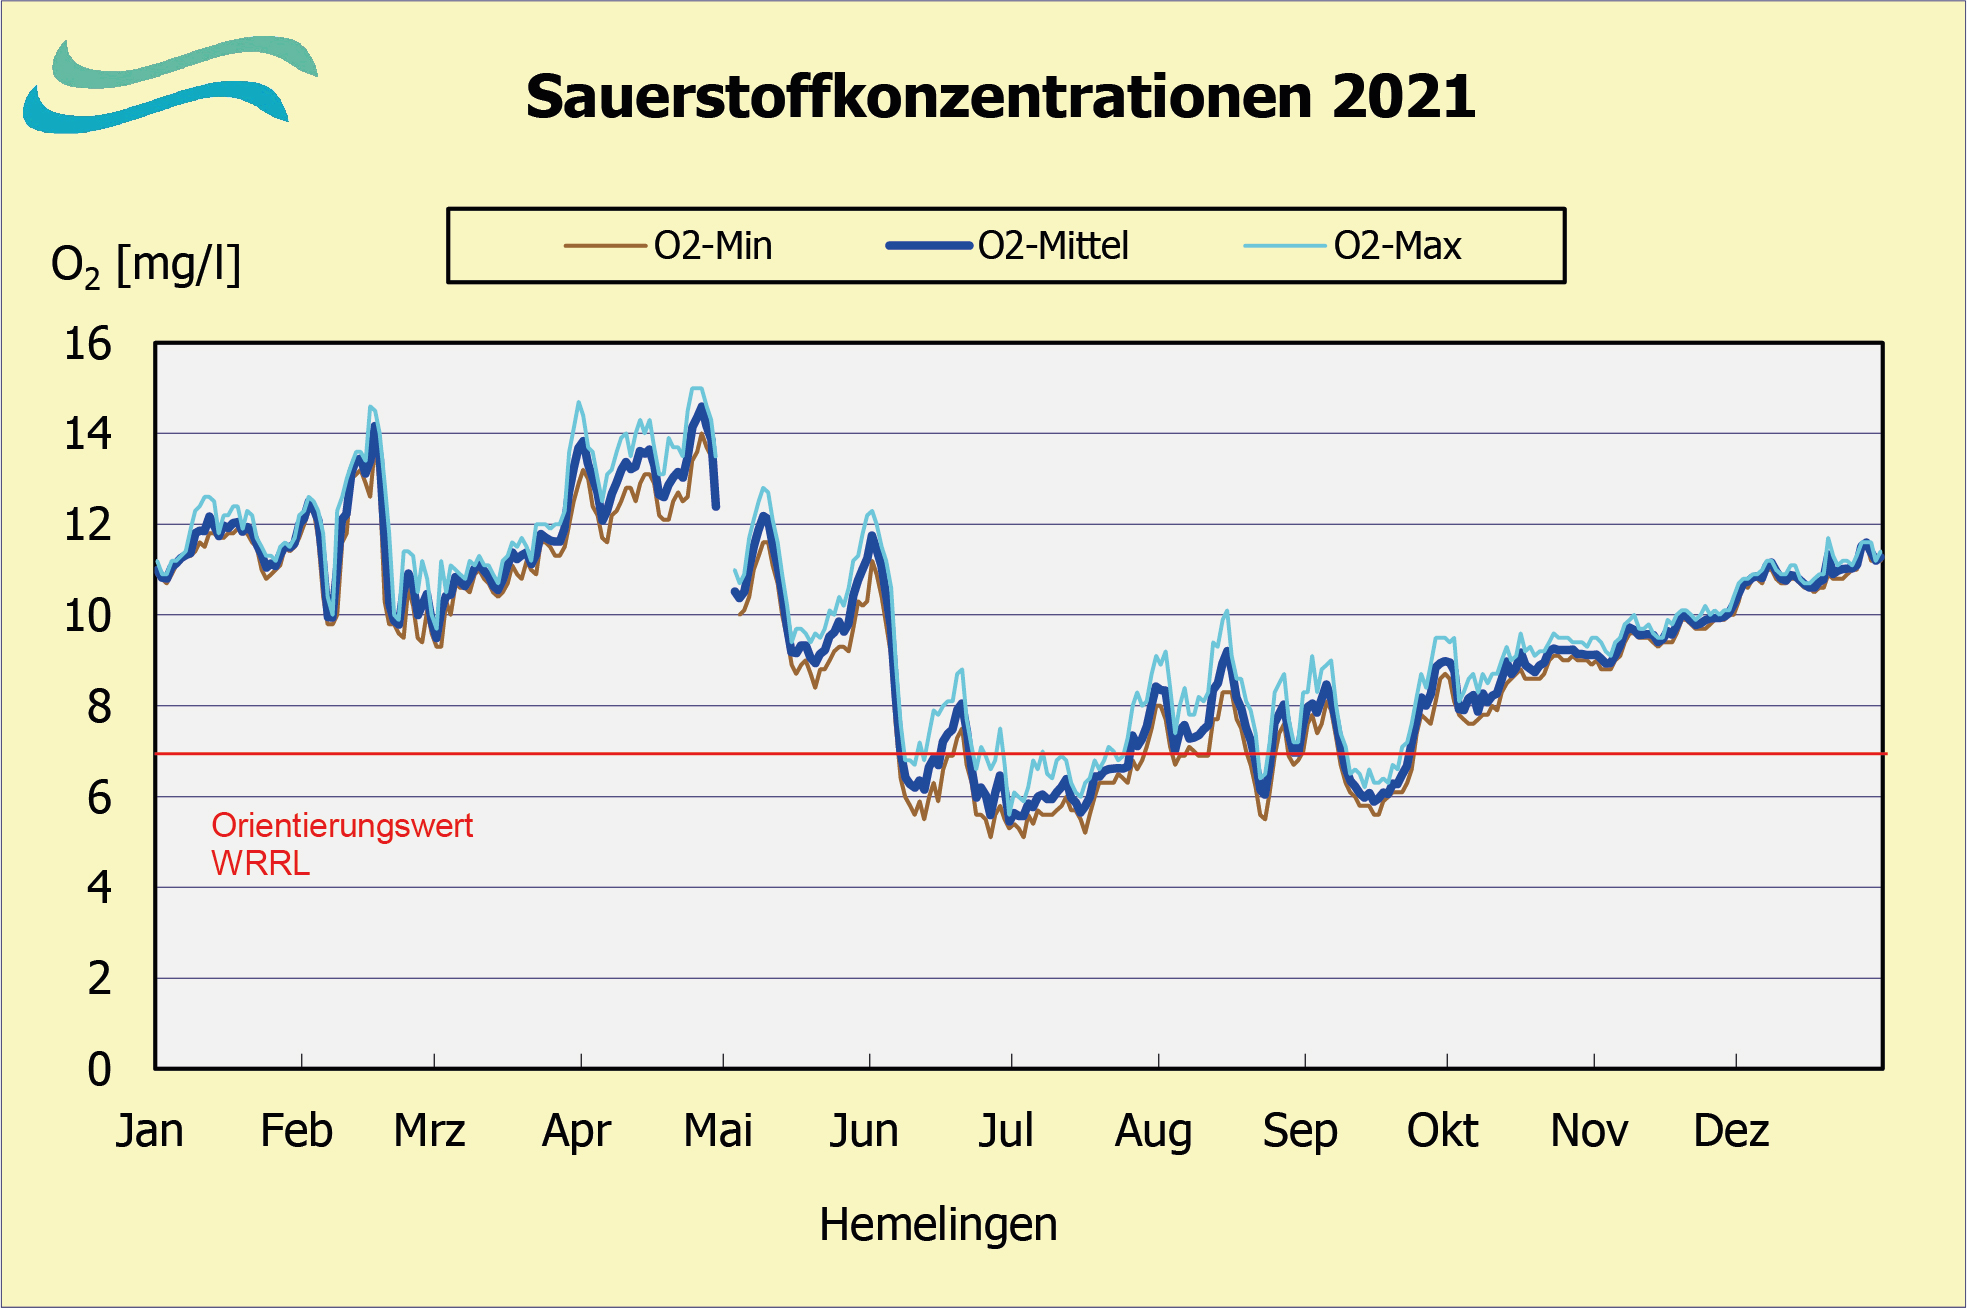 Sauerstoffkonzentrationen Hemelingen 2020 (FGG Weser)